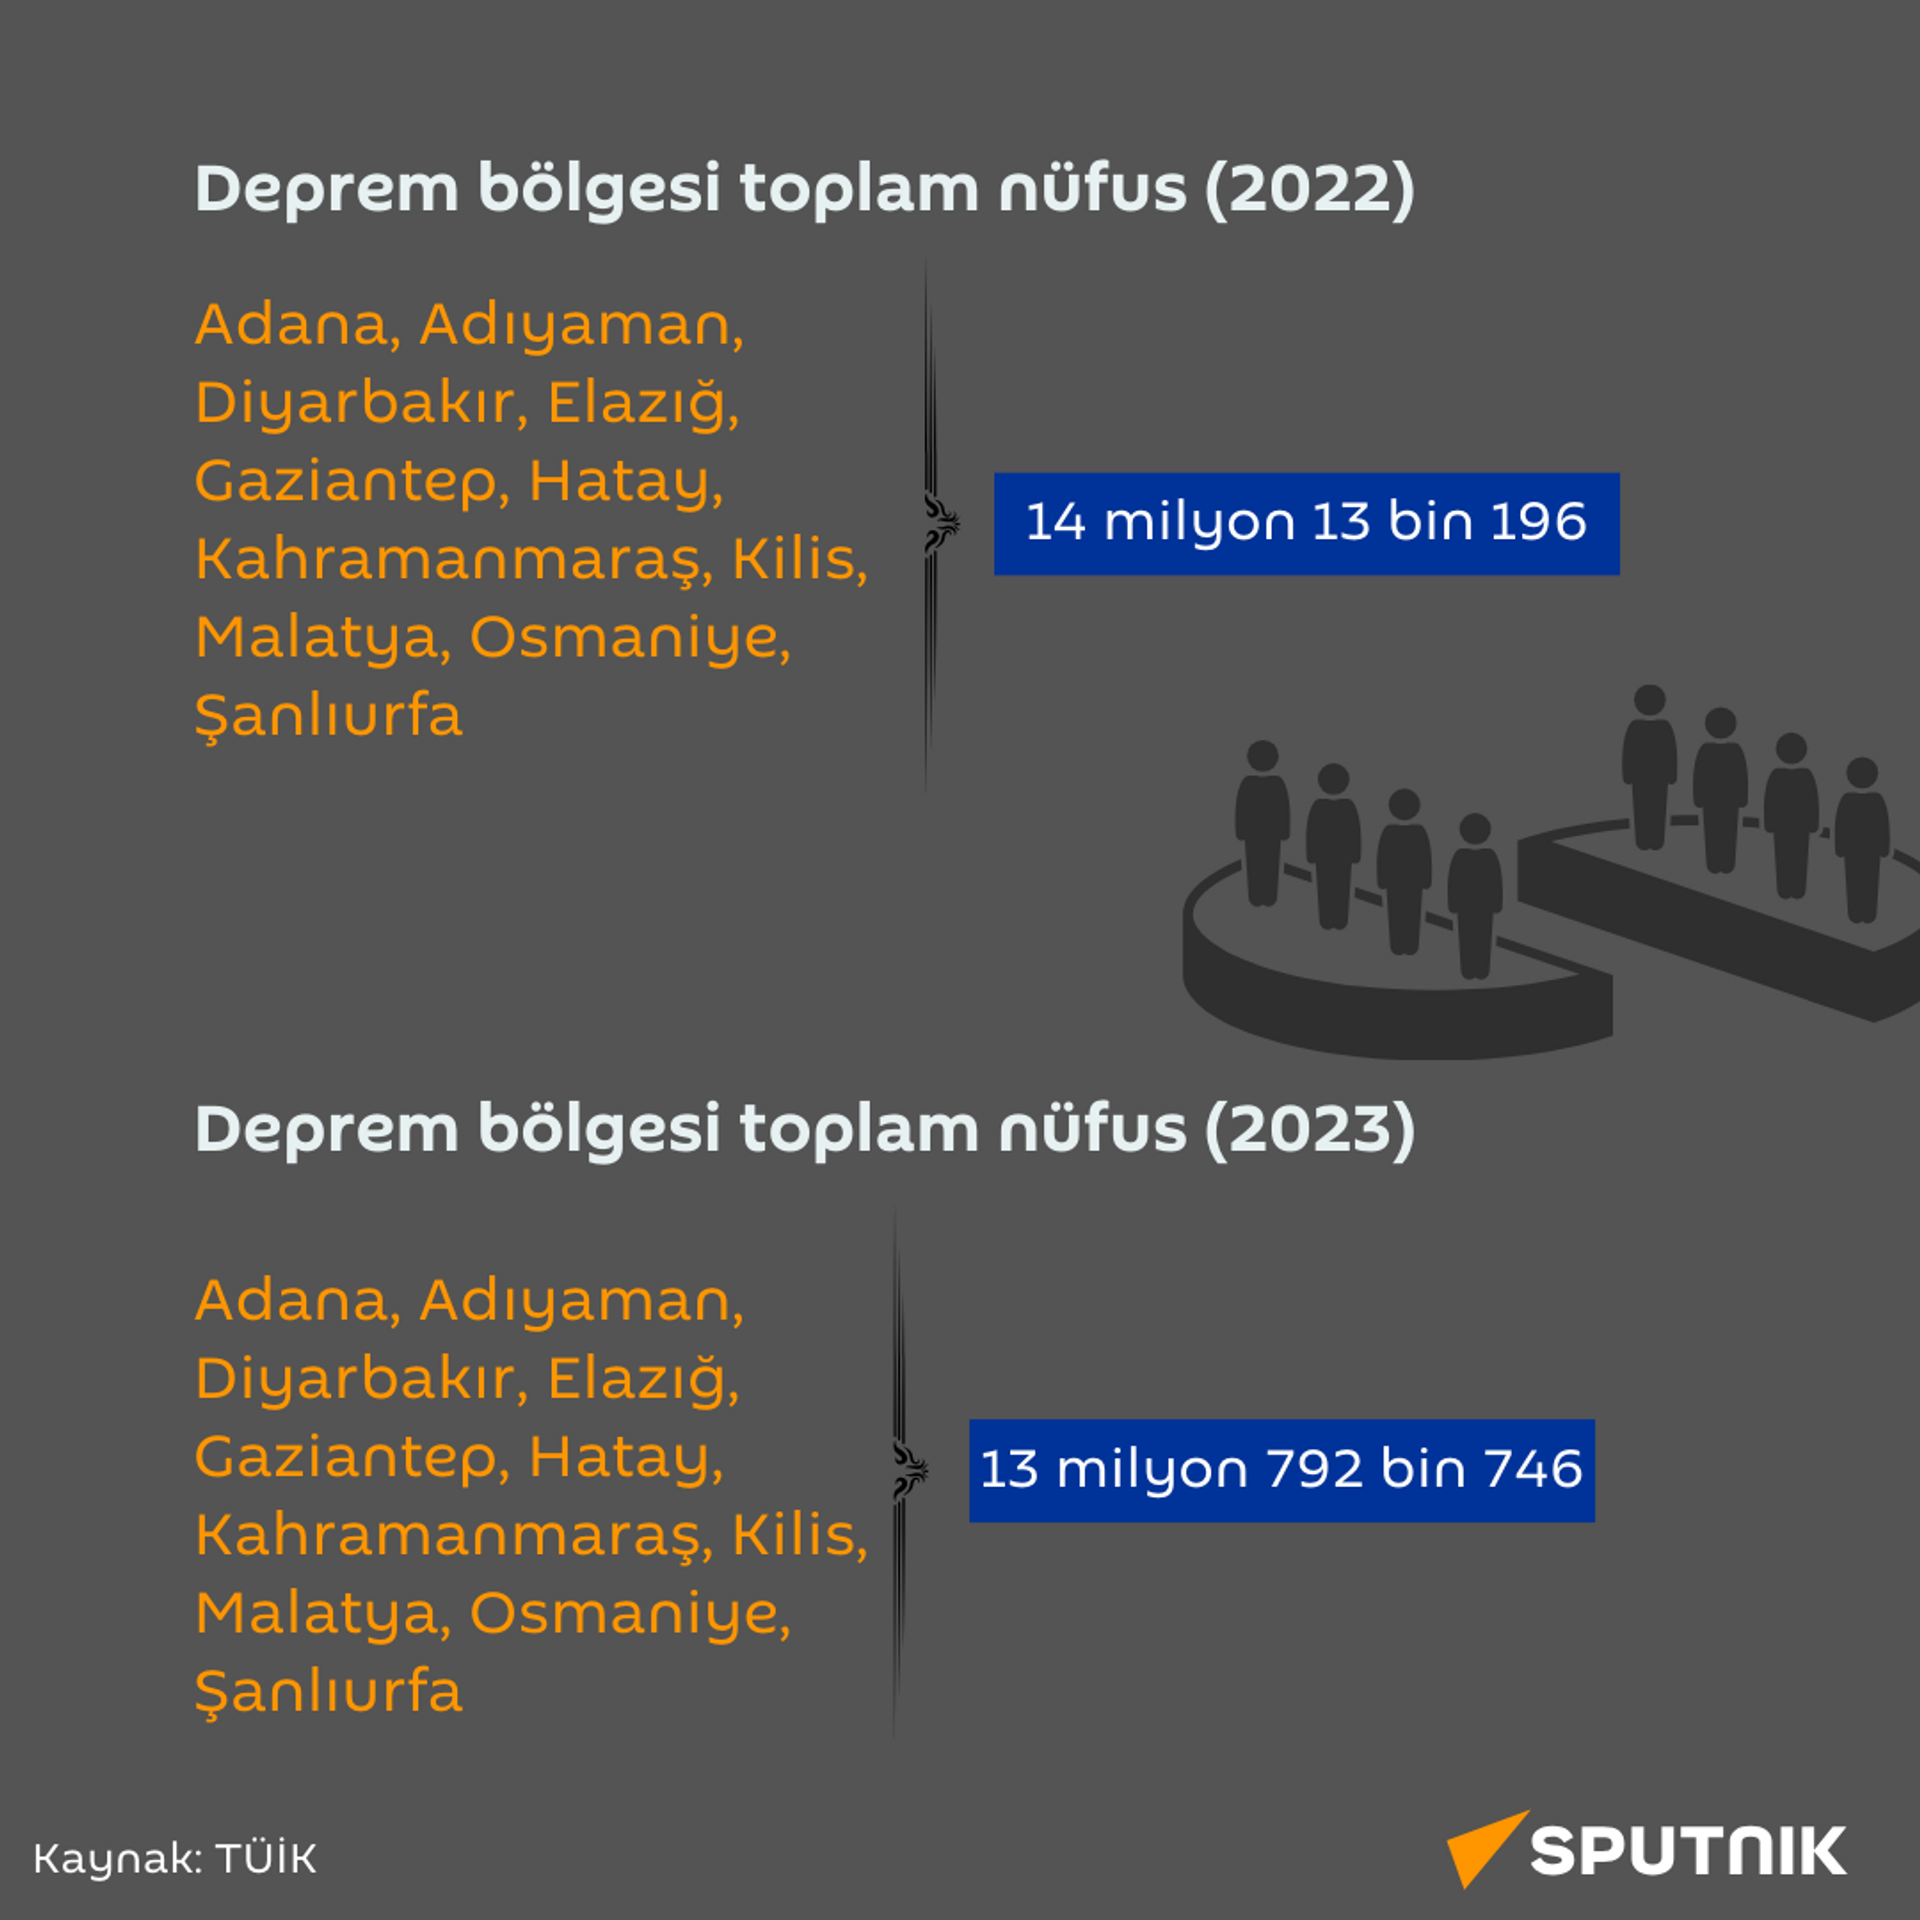 6 Şubat depremlerinin yaşandığı illerde nüfus değişimi - Sputnik Türkiye, 1920, 16.02.2024